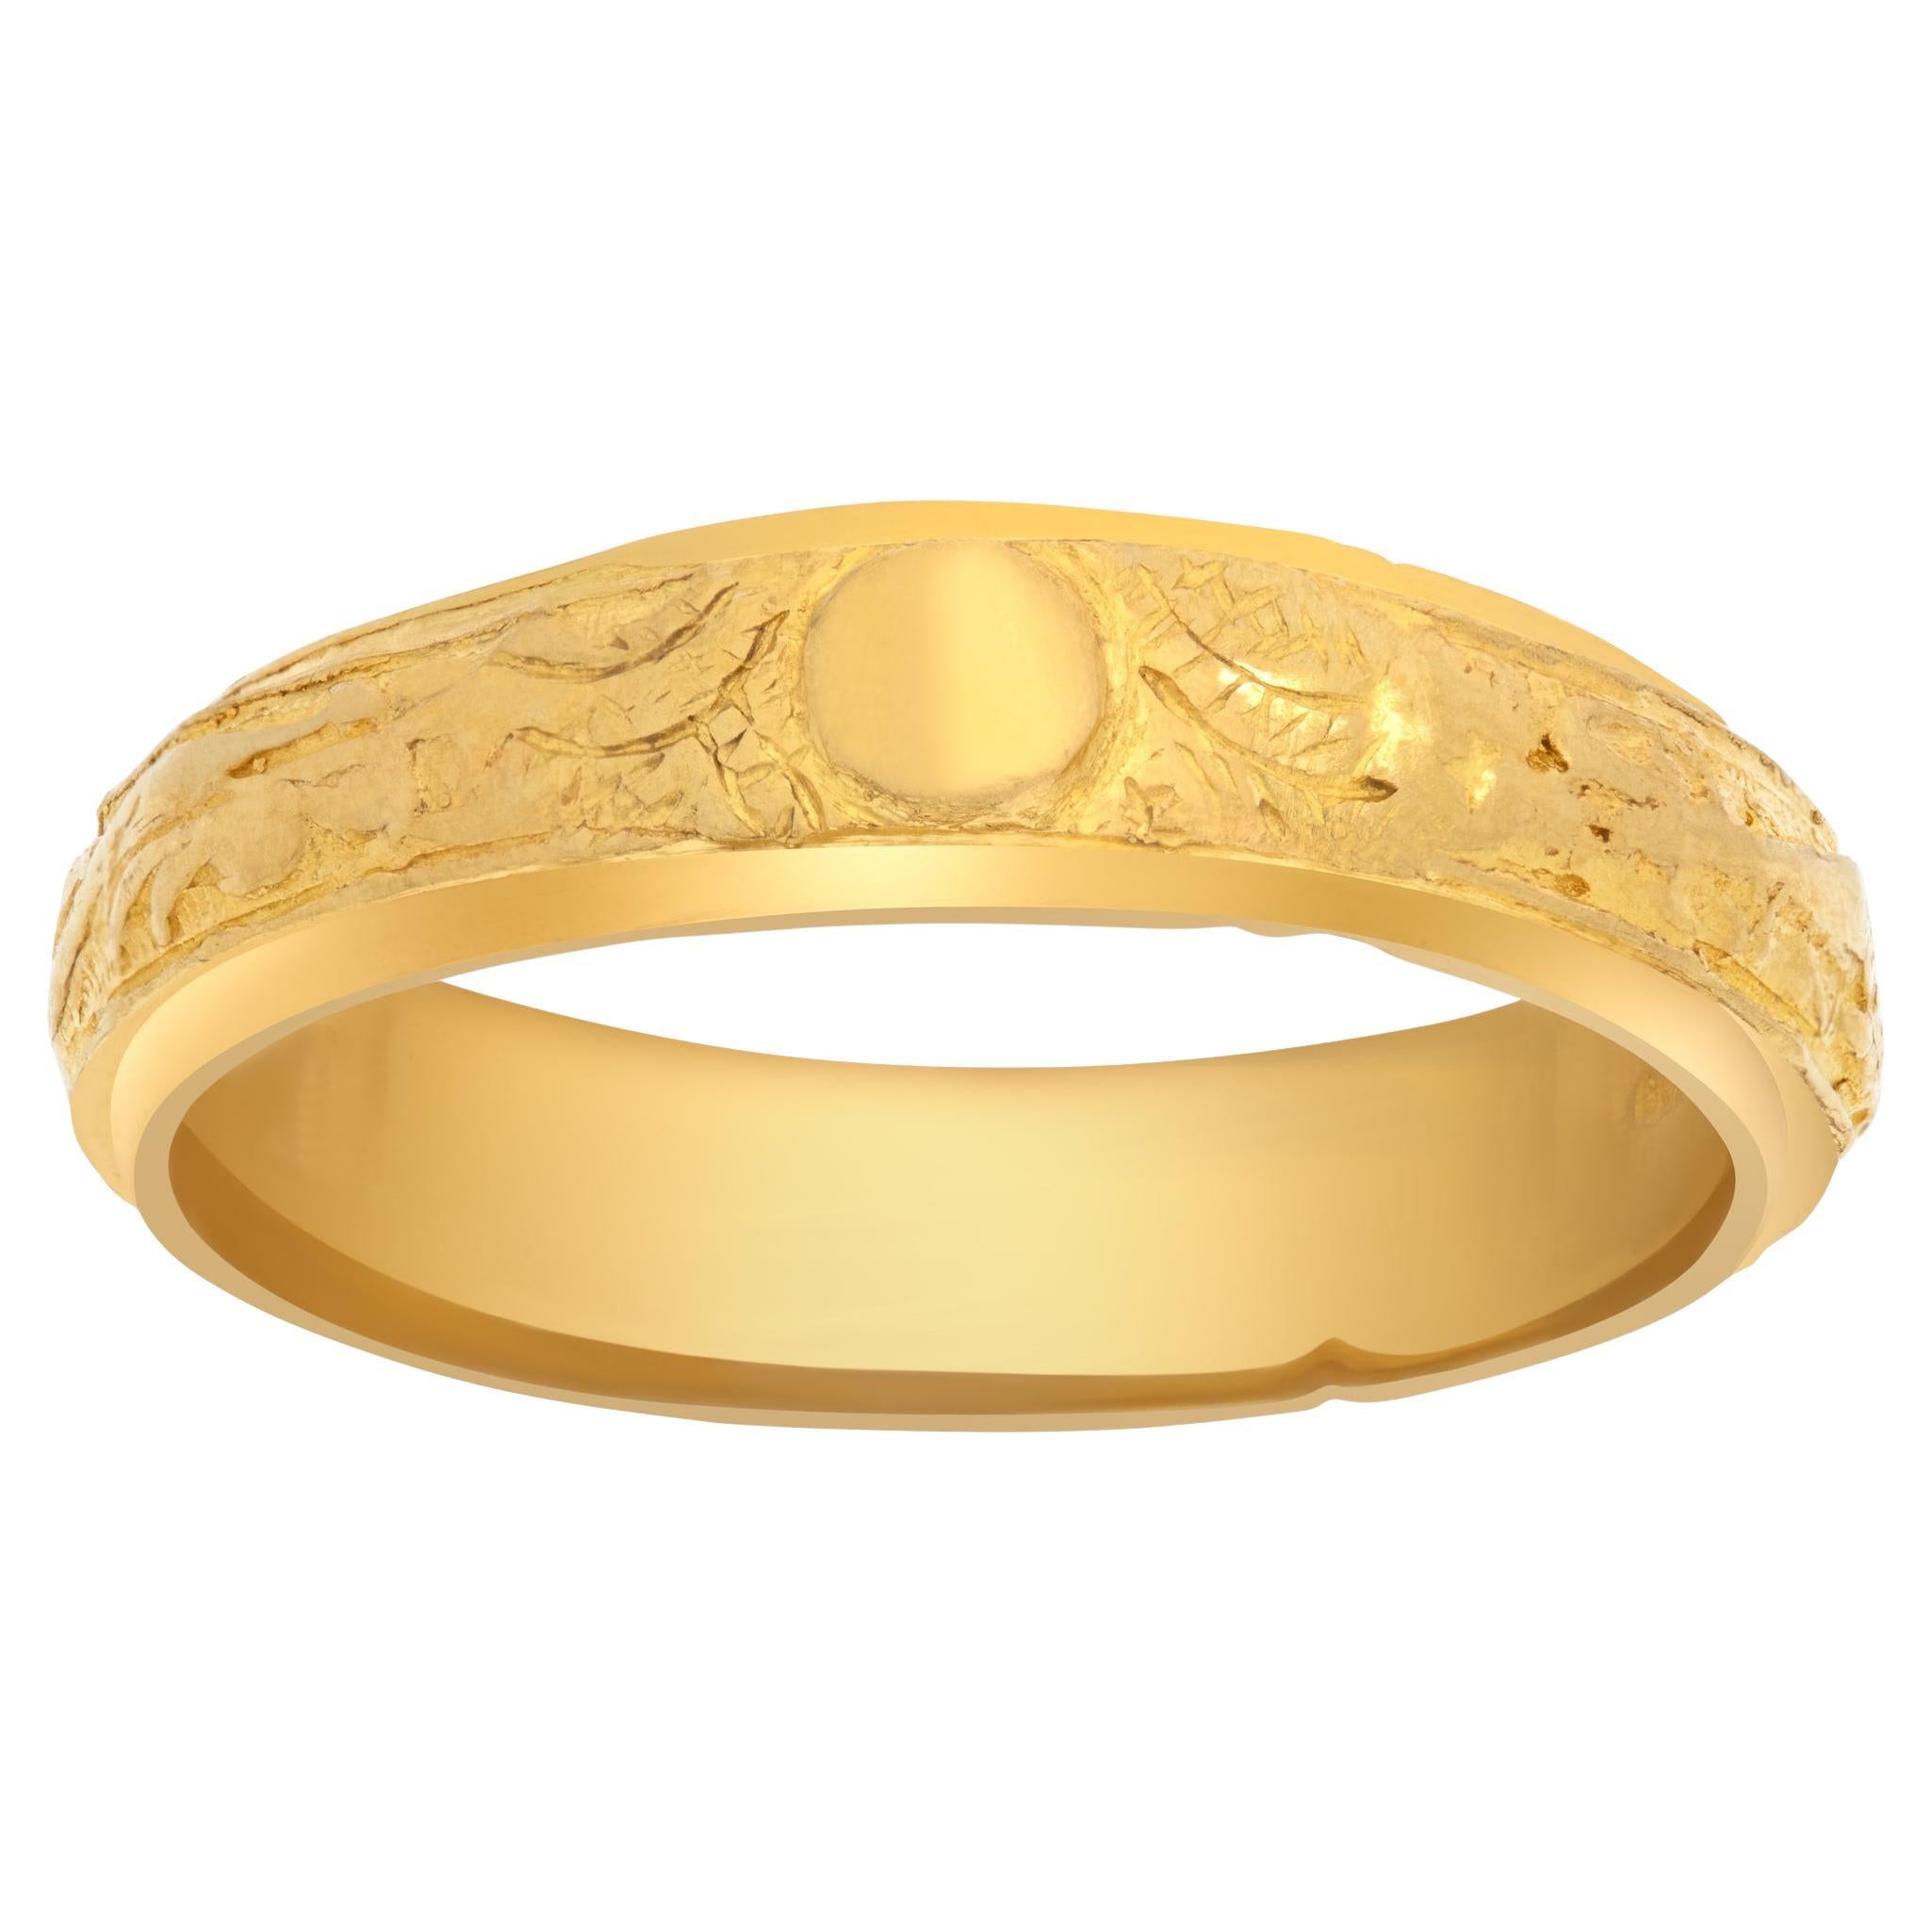 Rare Antique Chinese Signet Ring 24 Karat Gold - Ruby Lane